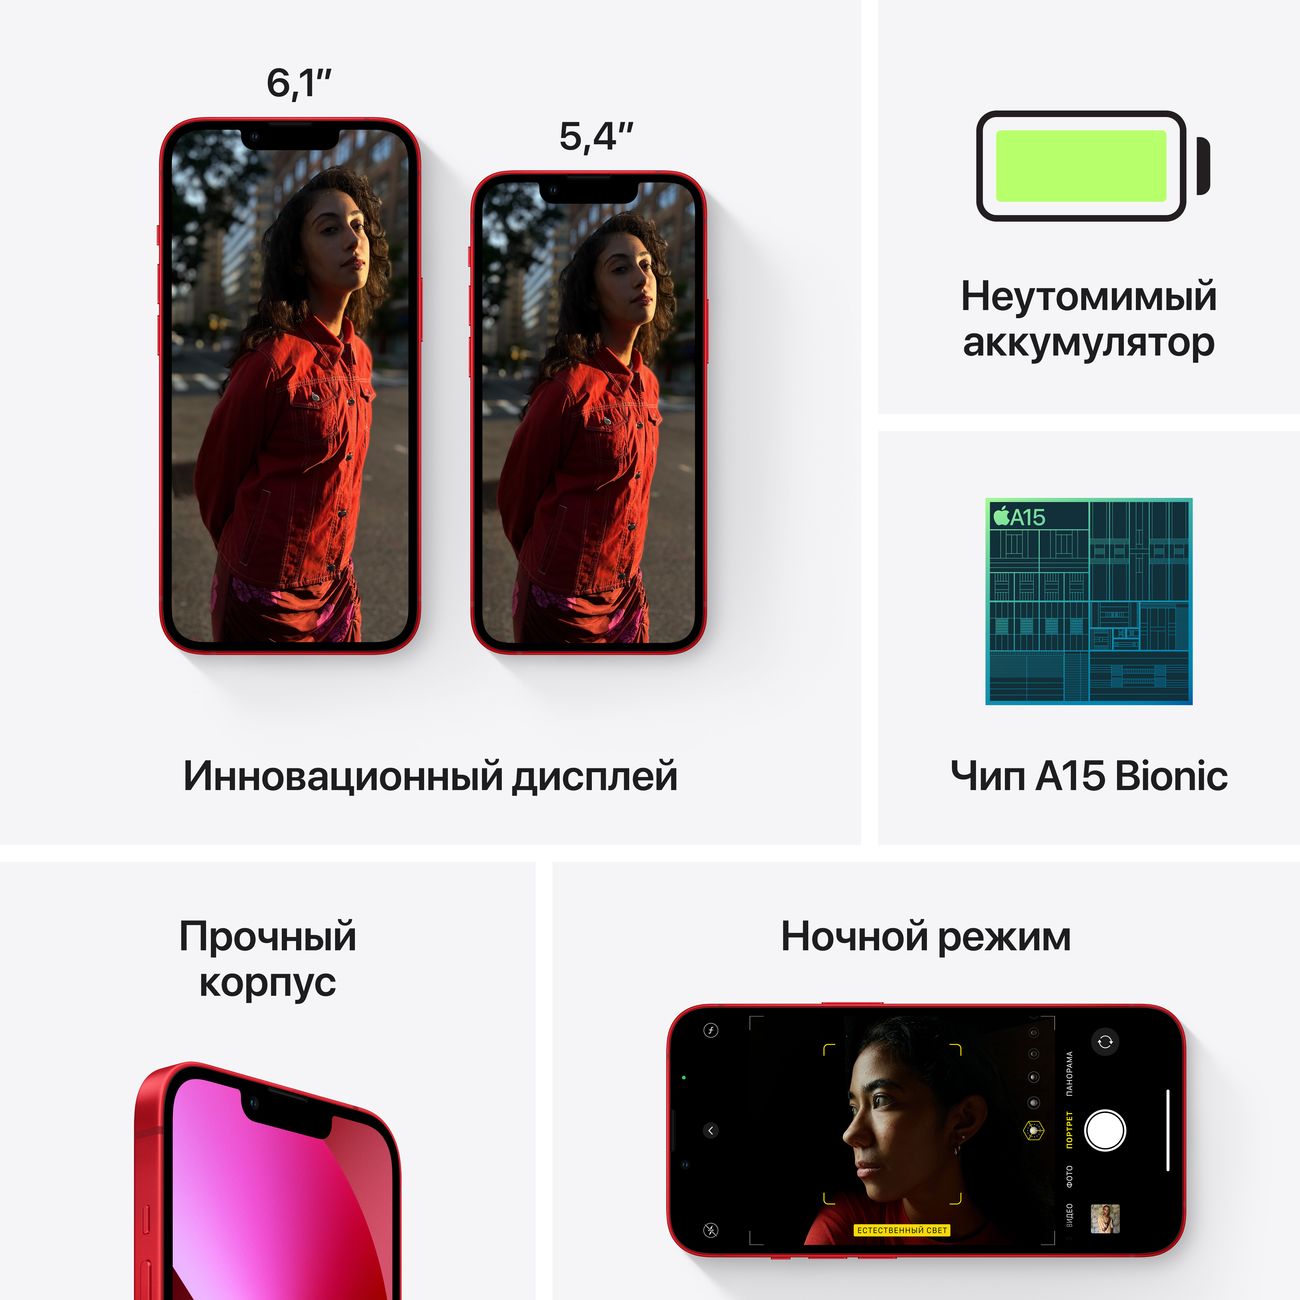 Купить смартфон apple iphone 13 256gb midnight Apple iPhone 13 в официальном магазине Apple, Samsung, Xiaomi. iPixel.ru Купить, заказ, кредит, рассрочка, отзывы,  характеристики, цена,  фотографии, в подарок.